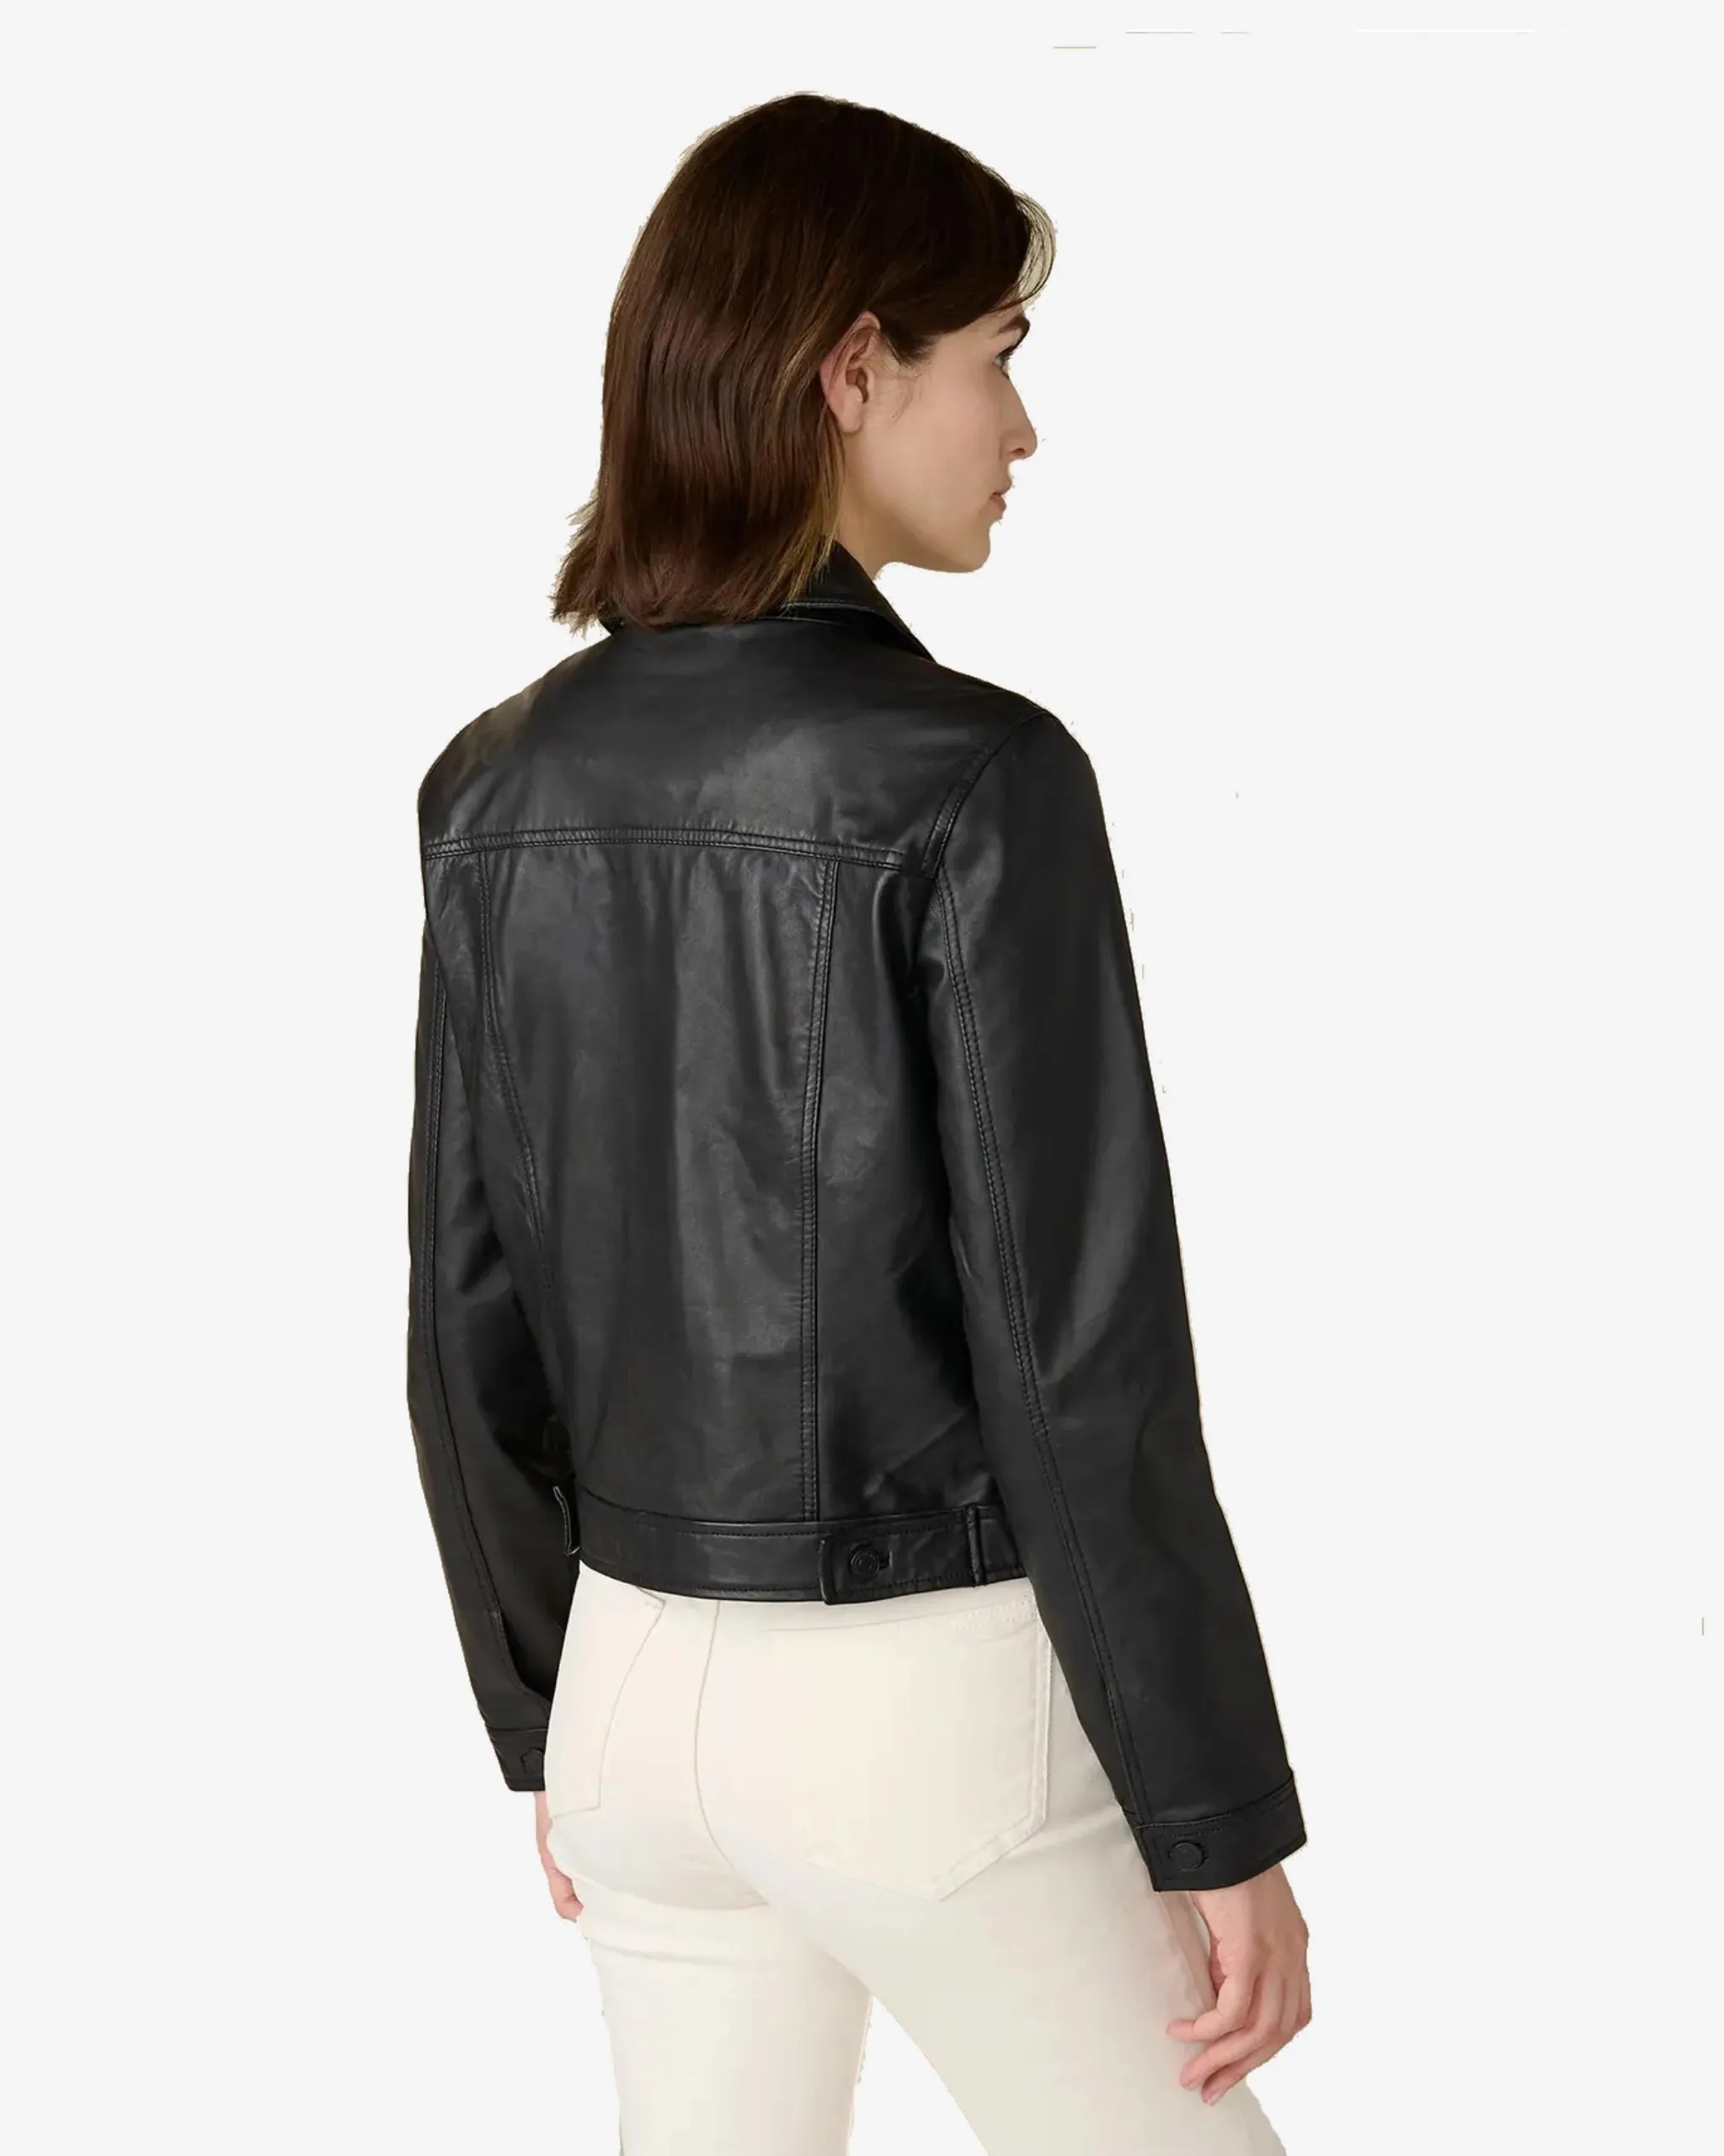 denise-womens-black-trucker-leather-jacket-100-genuine-lambskin (2)